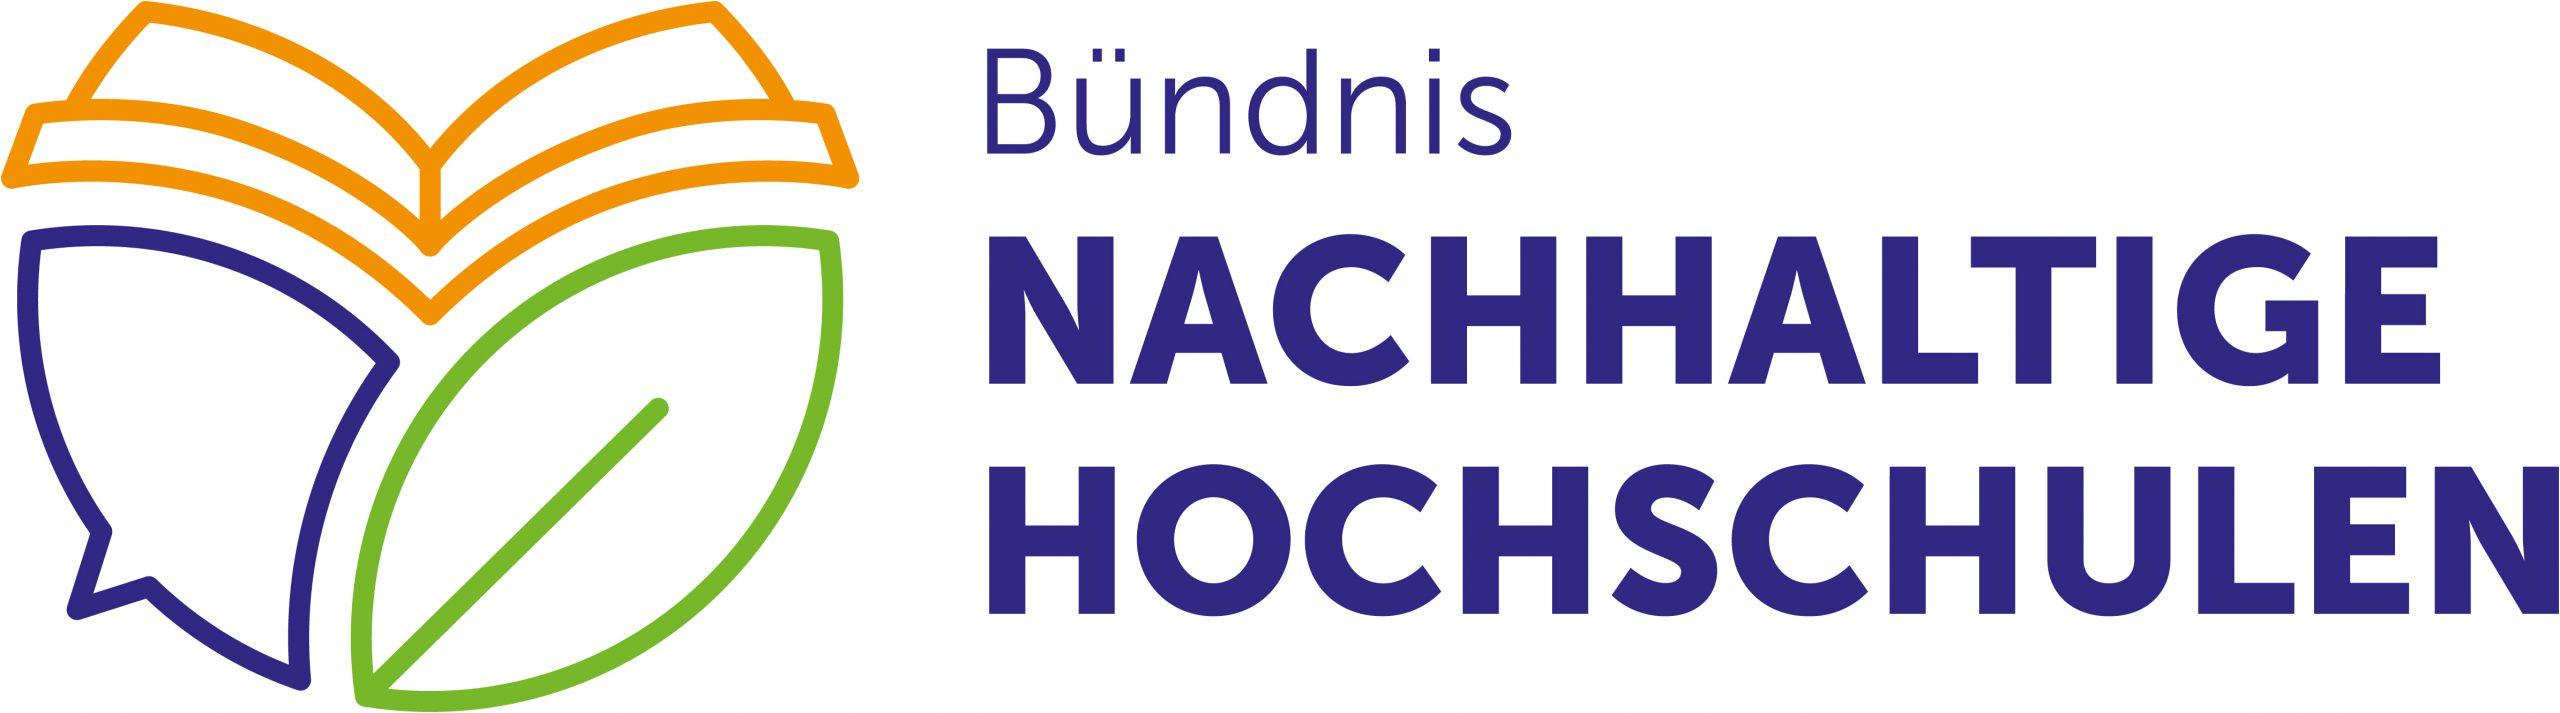 Logo Bündnis Nachhaltige Hochschulen